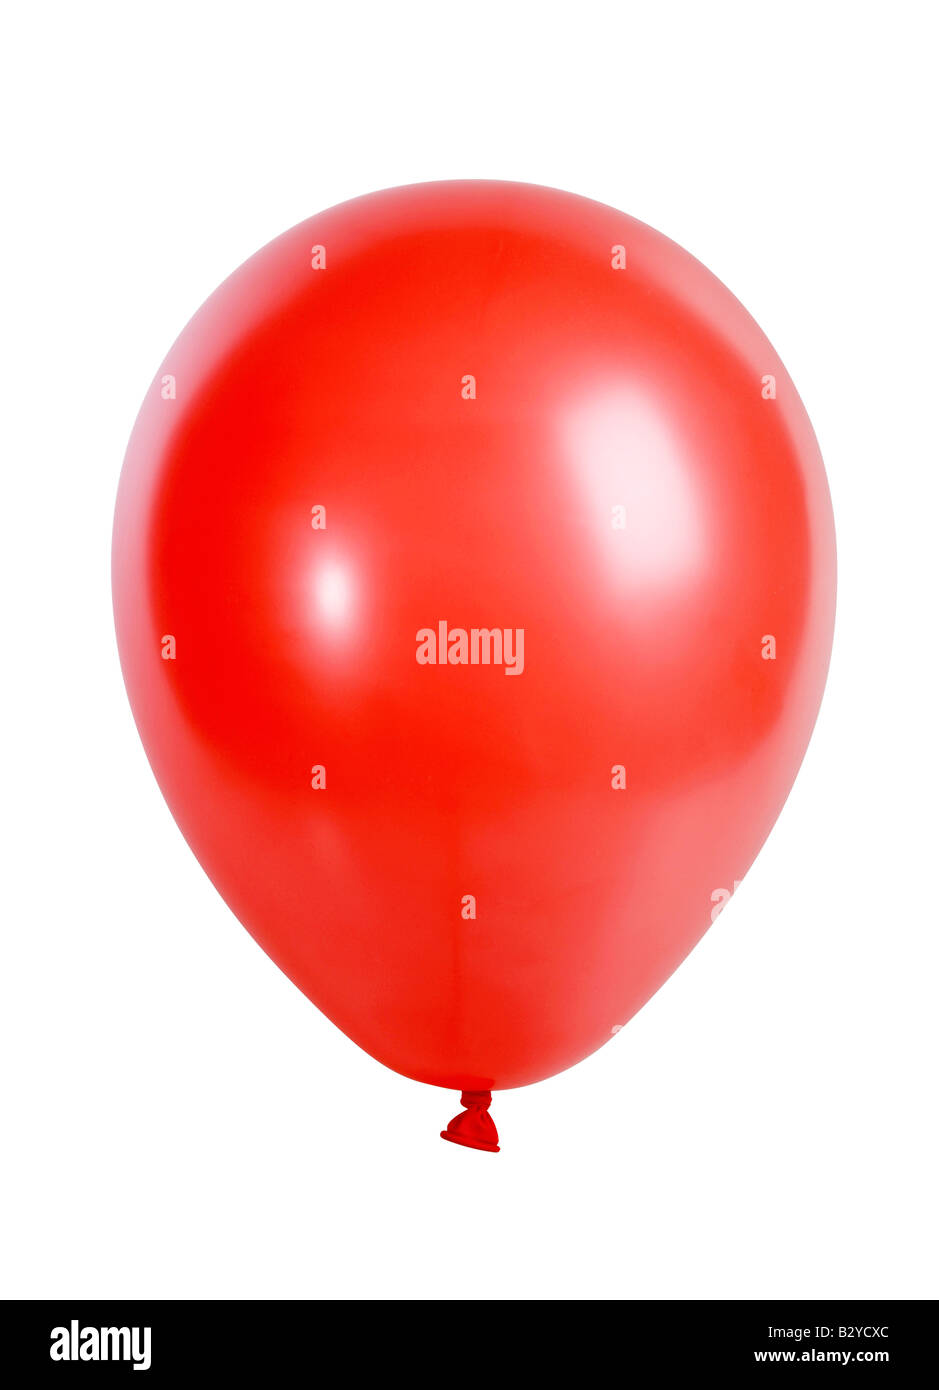 Portrait d'un ballon rouge isolé sur fond blanc XXL file photo avec un appareil photo 21 mégapixels haute résolution Banque D'Images